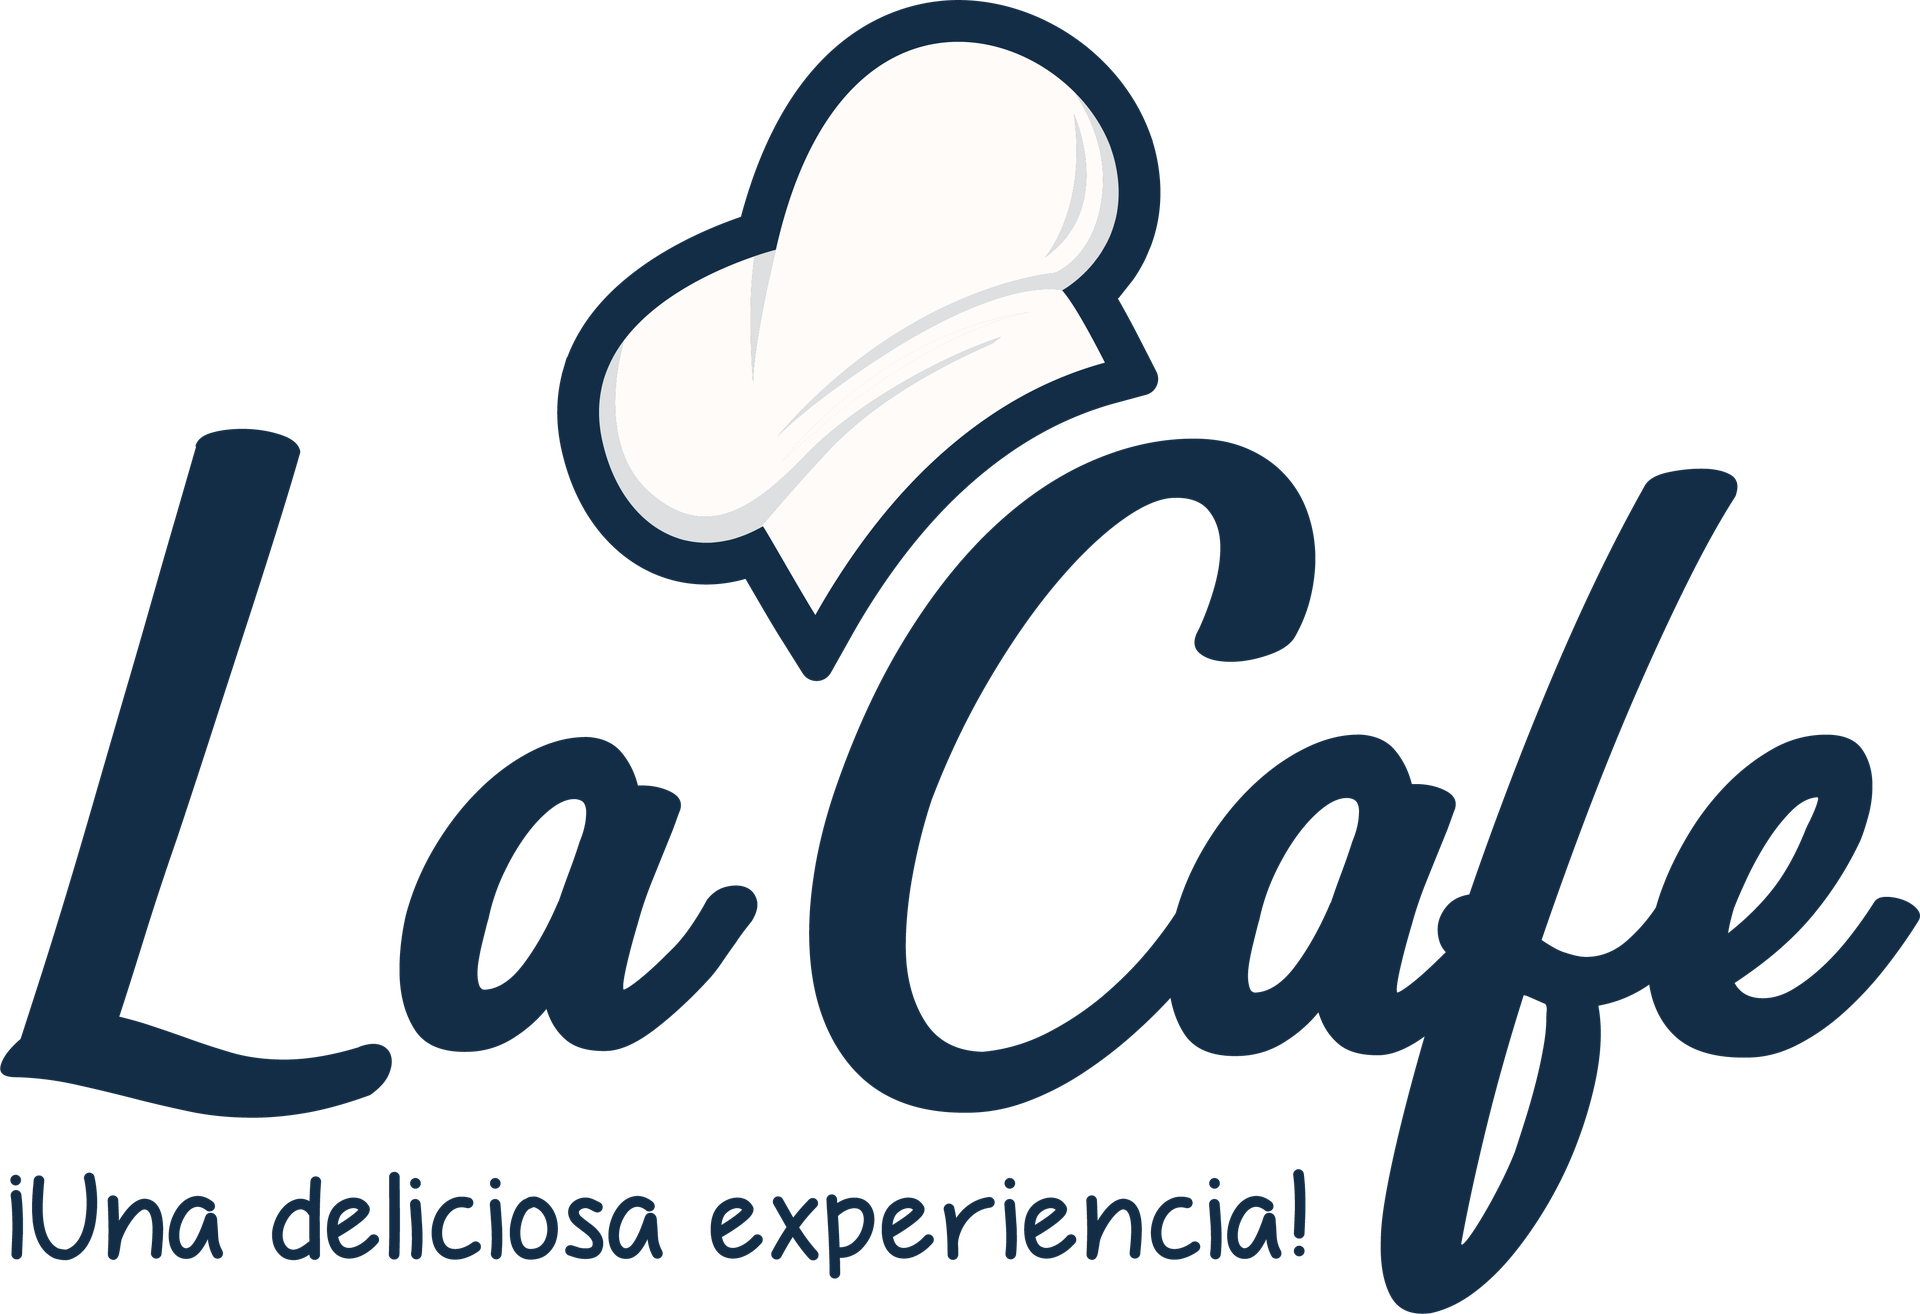 La Cafe Acatan